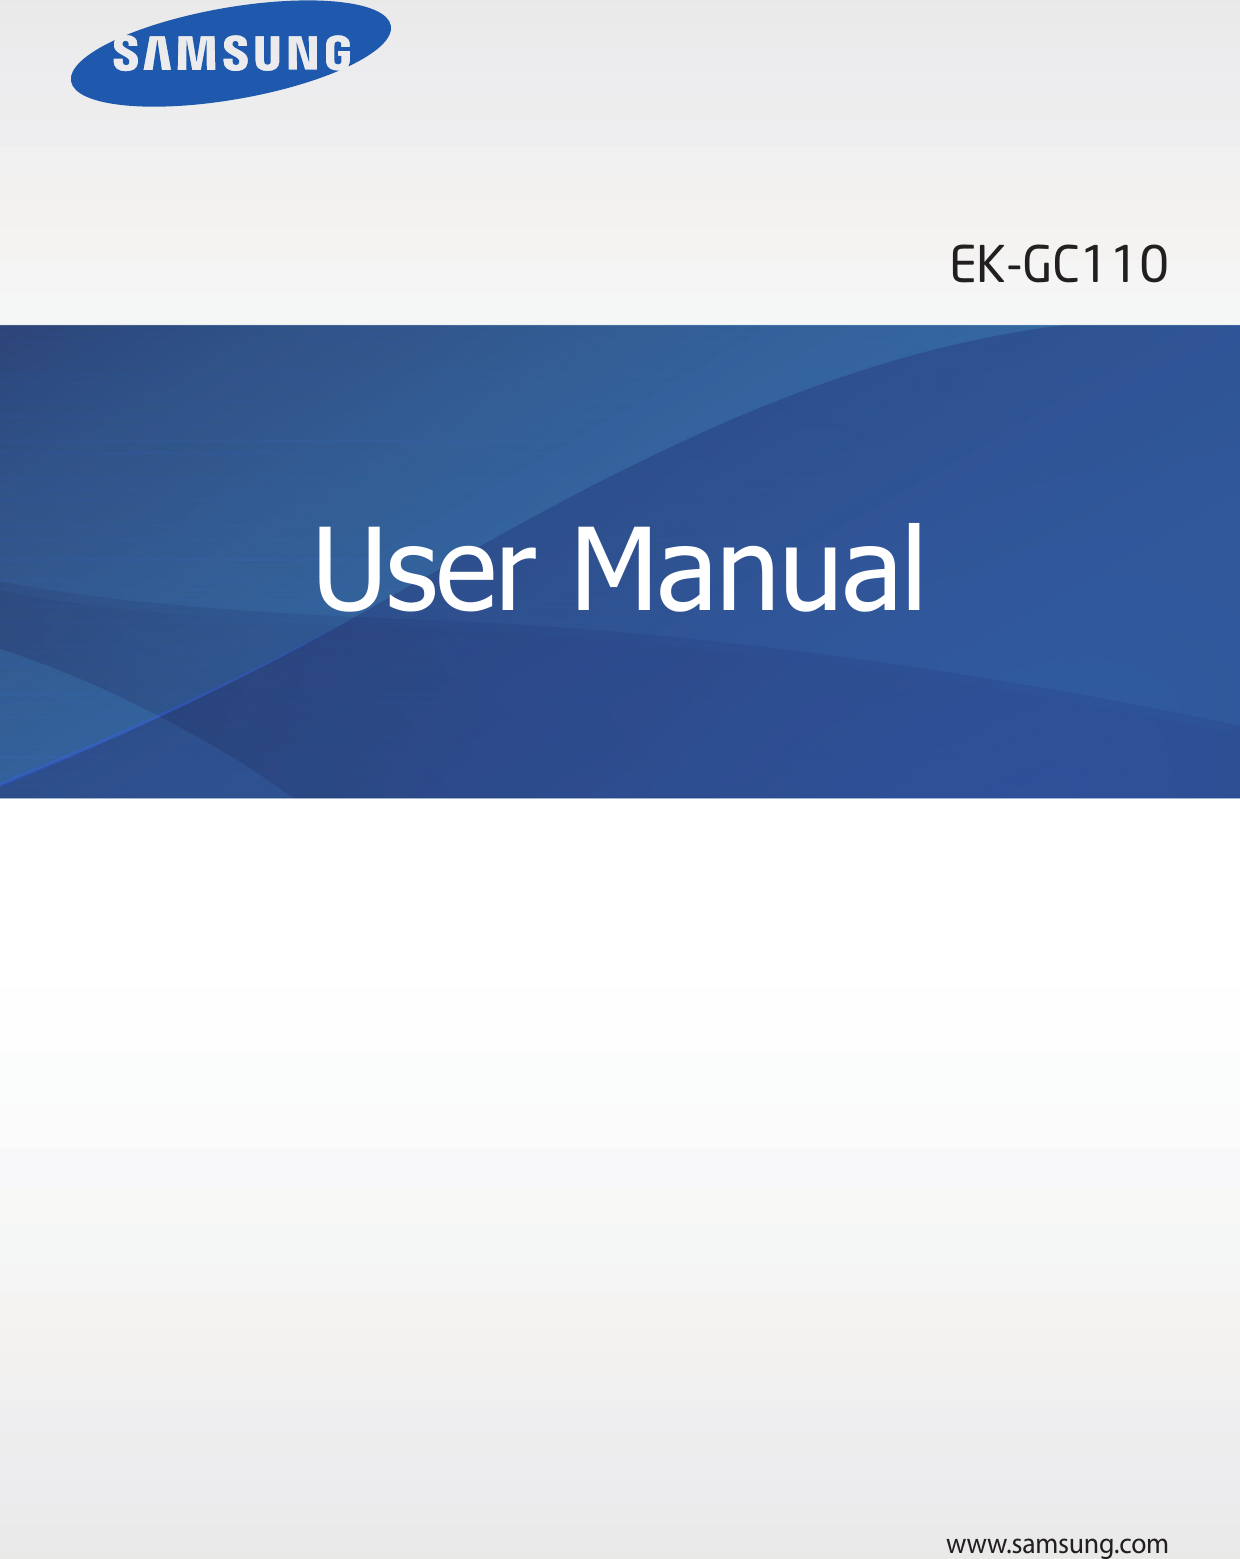 Samsung Camera Ek-gc110 User Manual